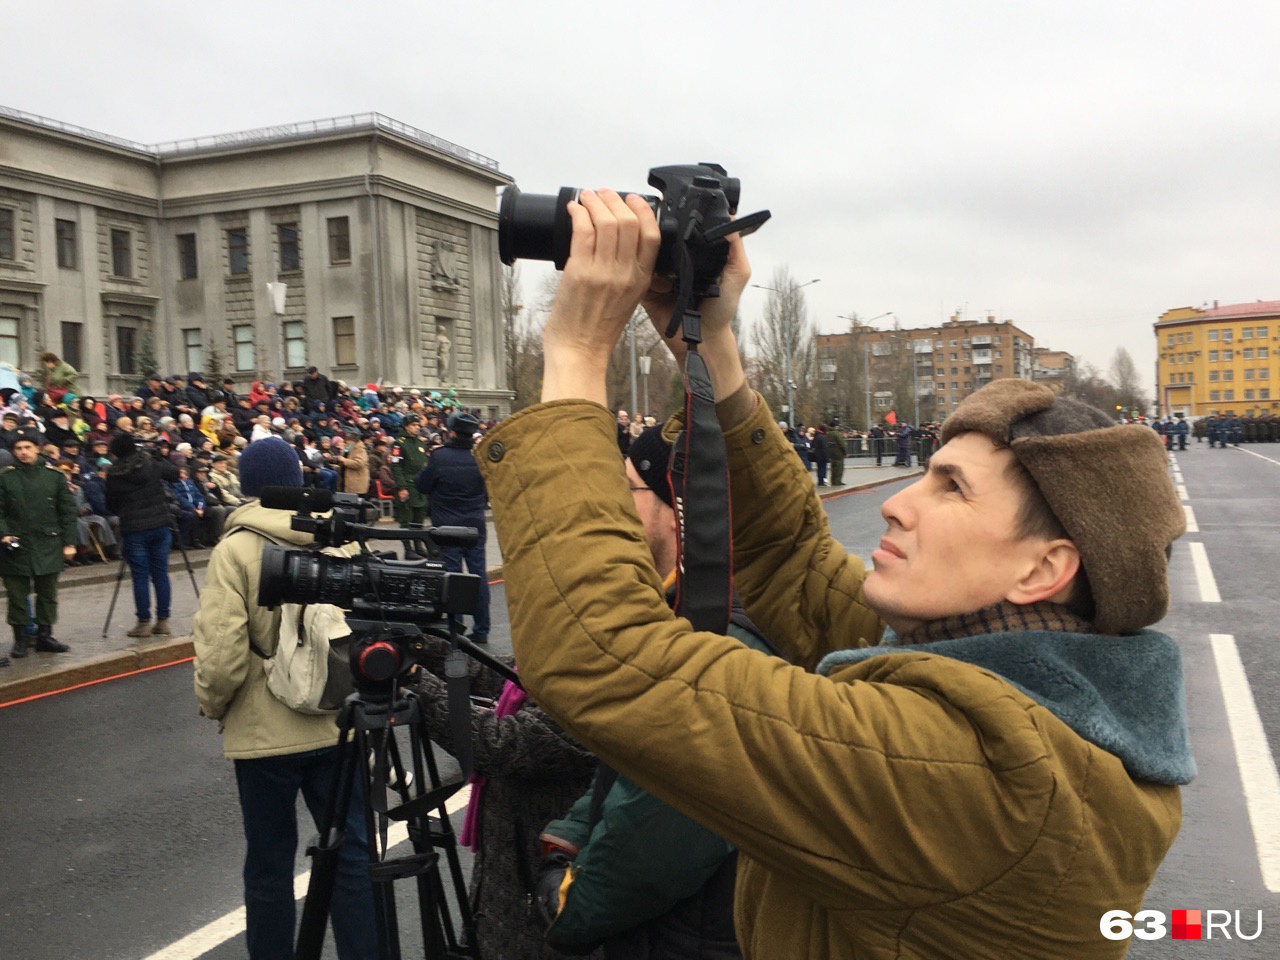 За парадом следили десятки фото- и видеокамер